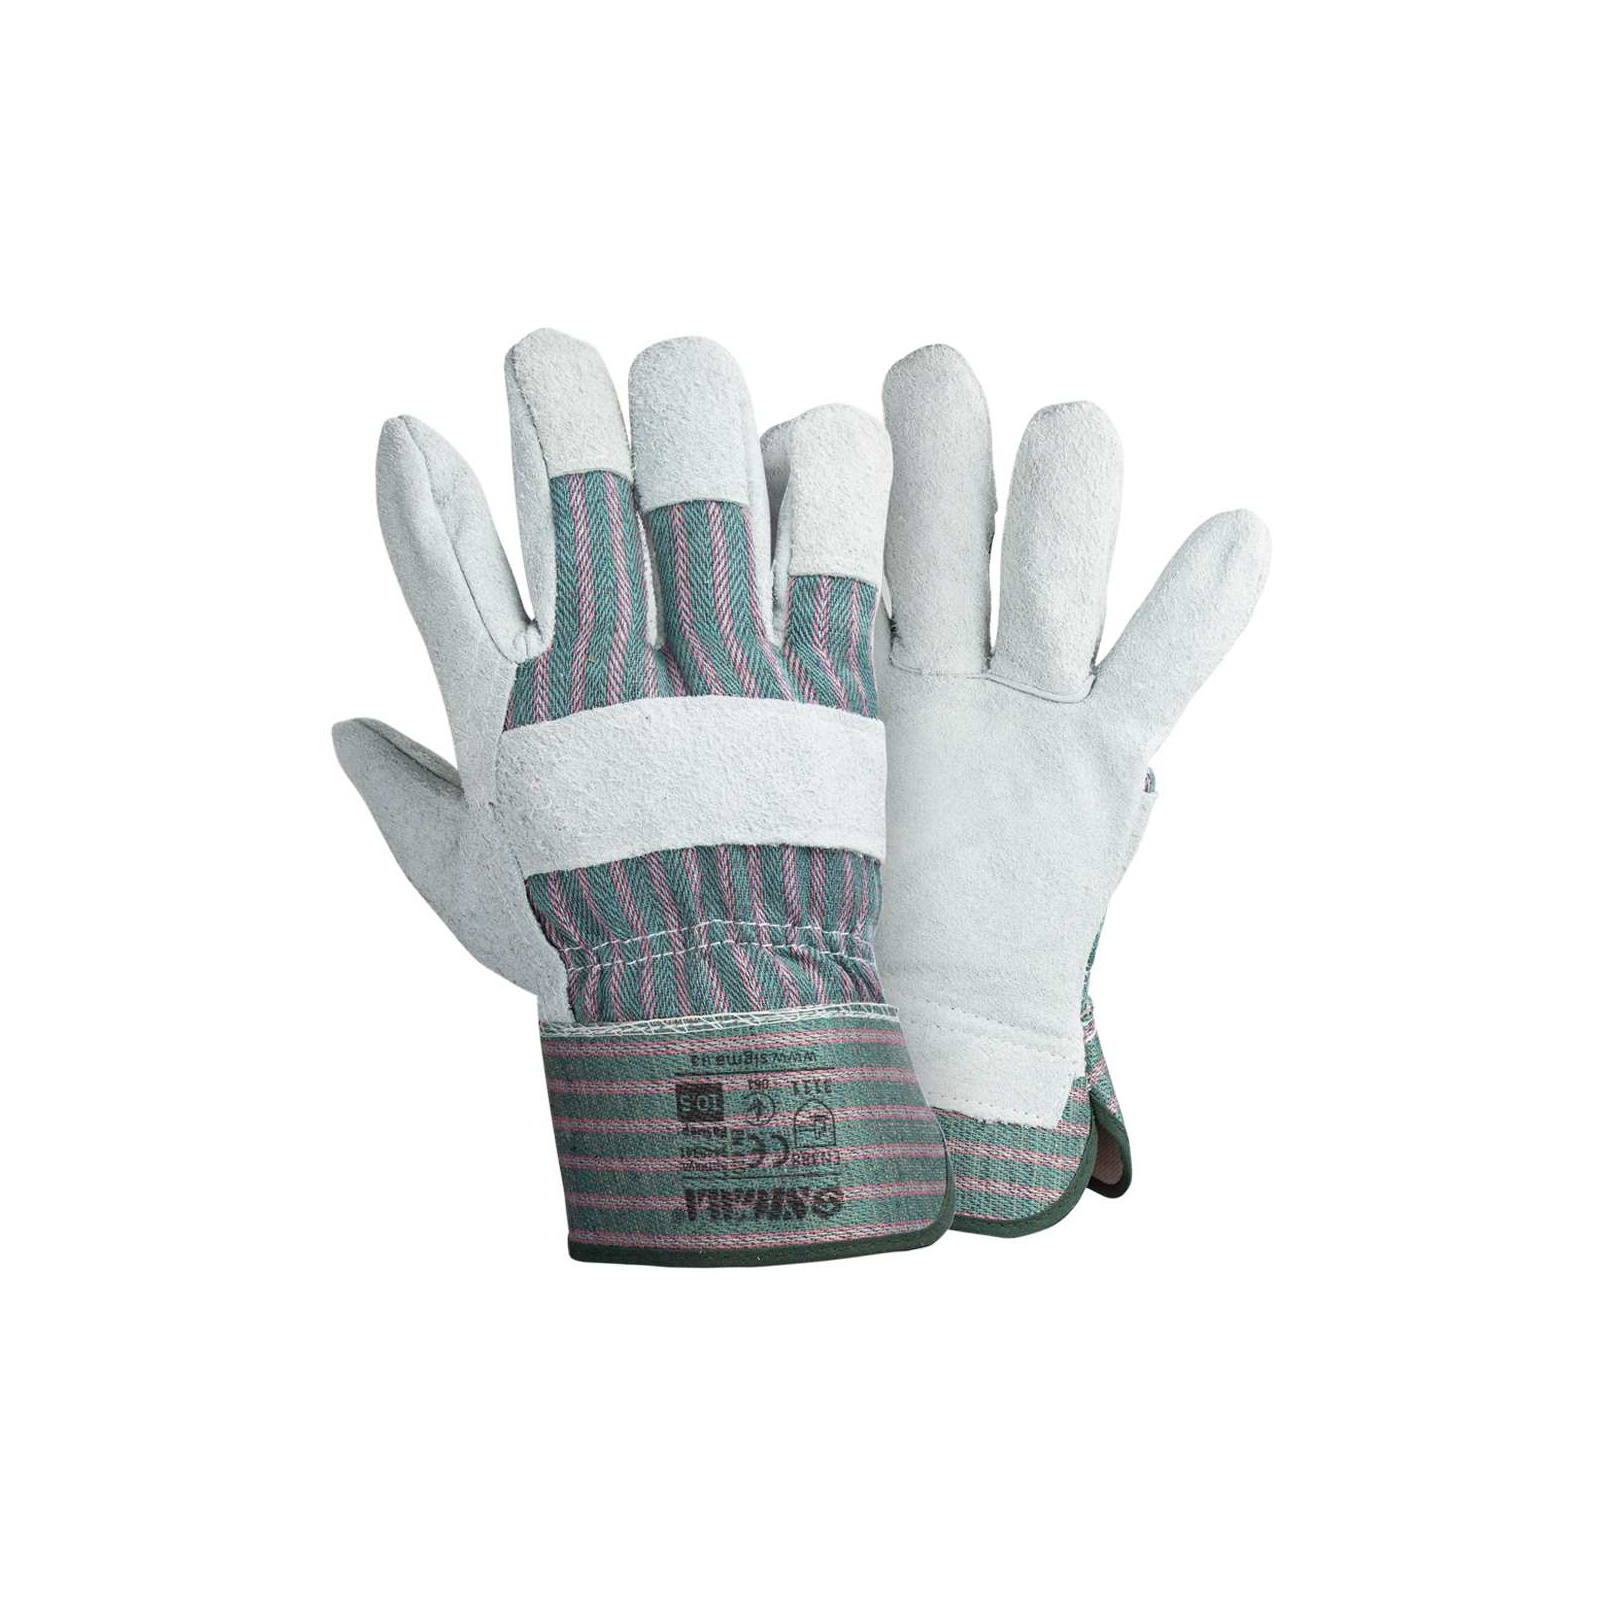 Захисні рукавиці Sigma комбіновані замшеві р10.5, клас АВ (цільна долоня) (9448341)